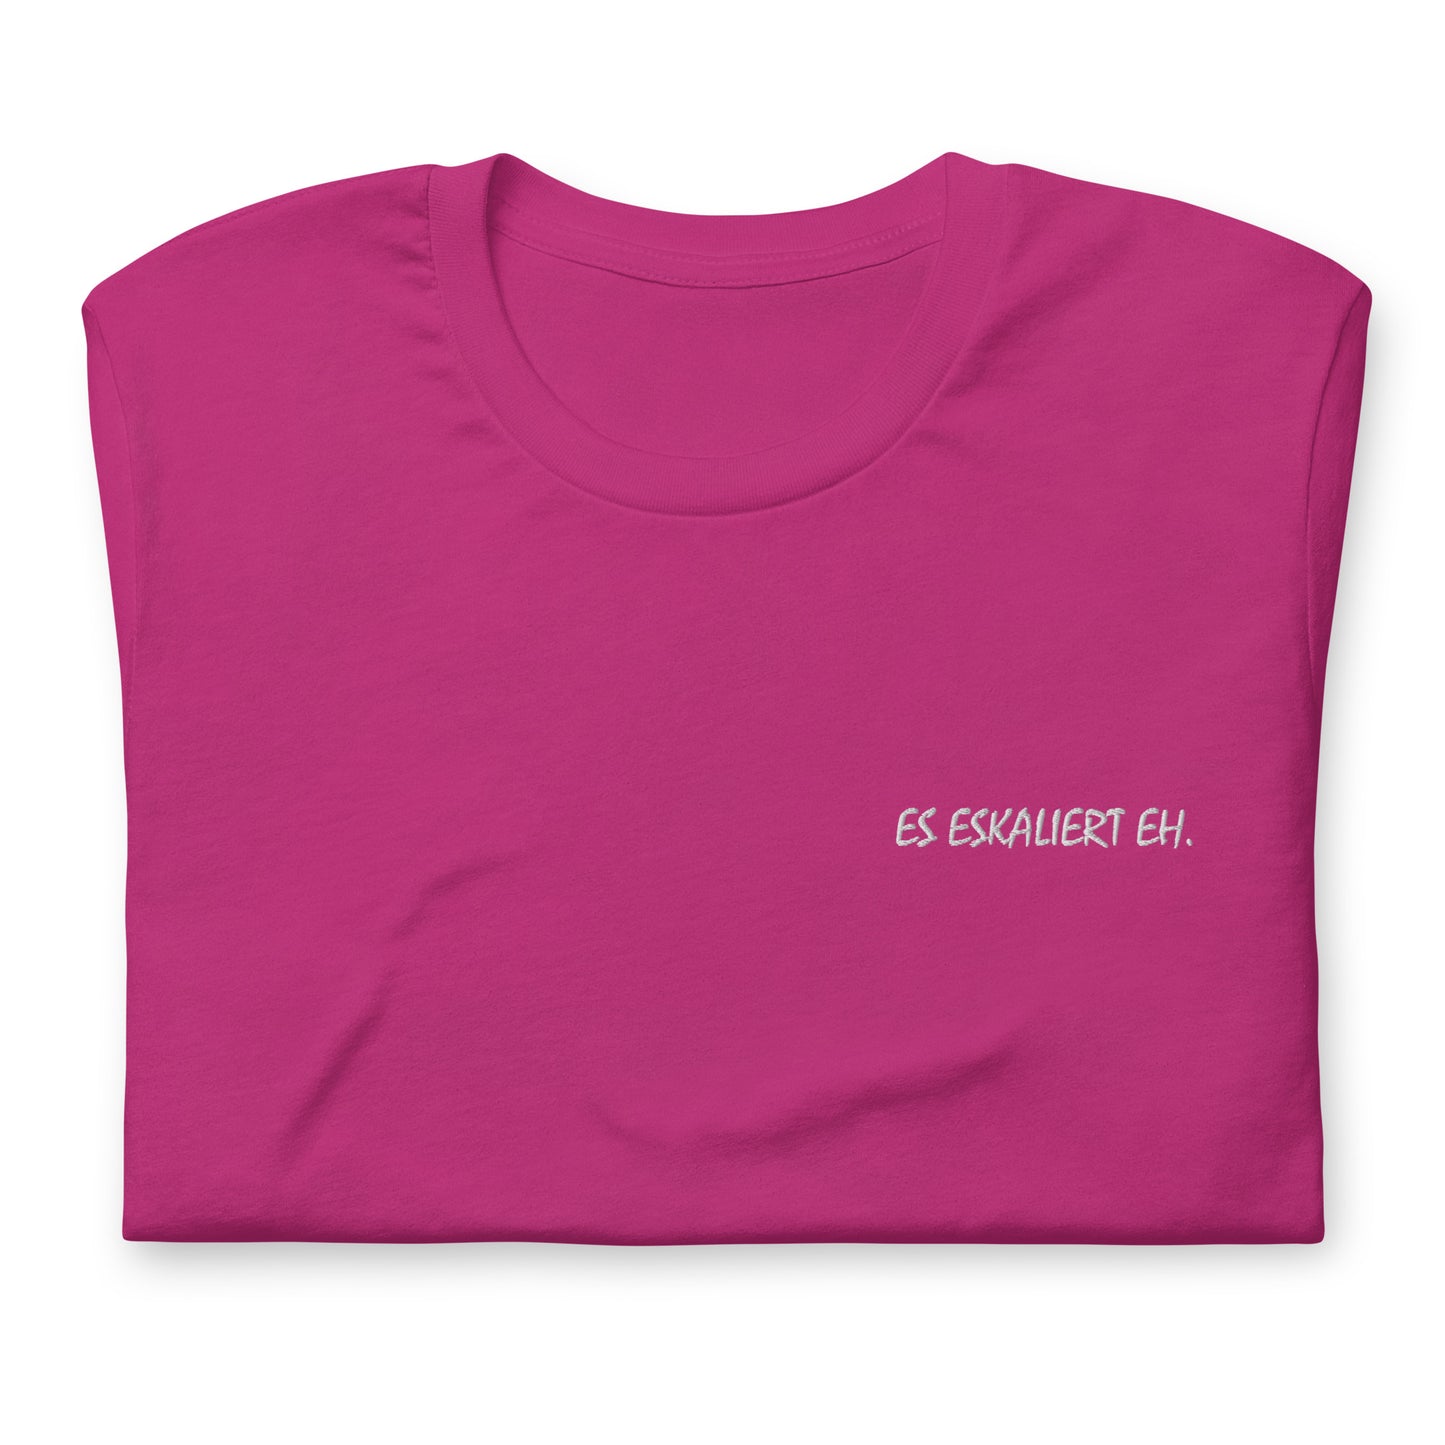 ES ESKALIERT EH. - besticktes T-Shirt